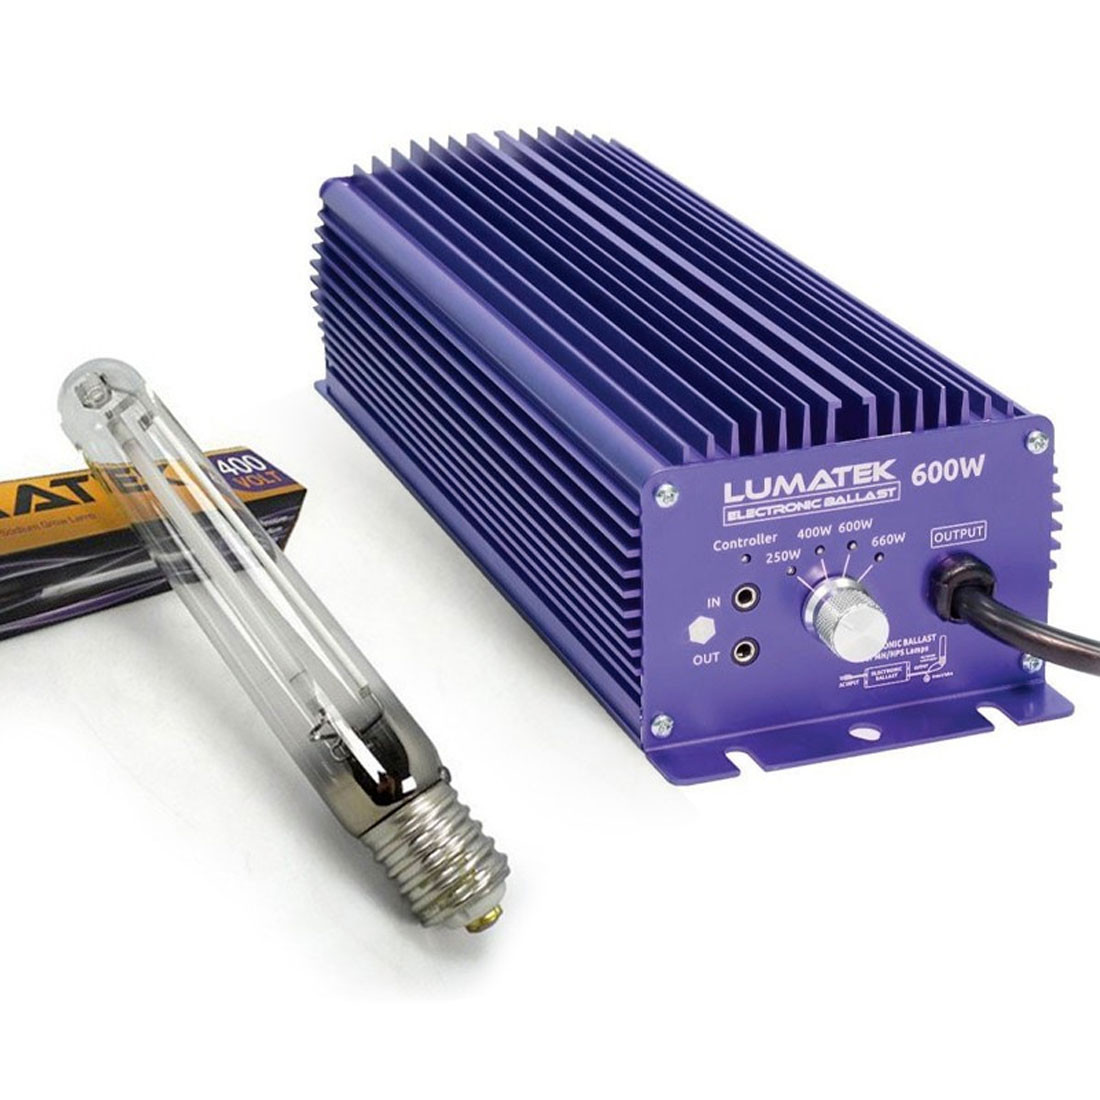 Kit Pro - Dimmbares Vorschaltgerät + Glühbirne E40 - 600W - 400V - Lumatek